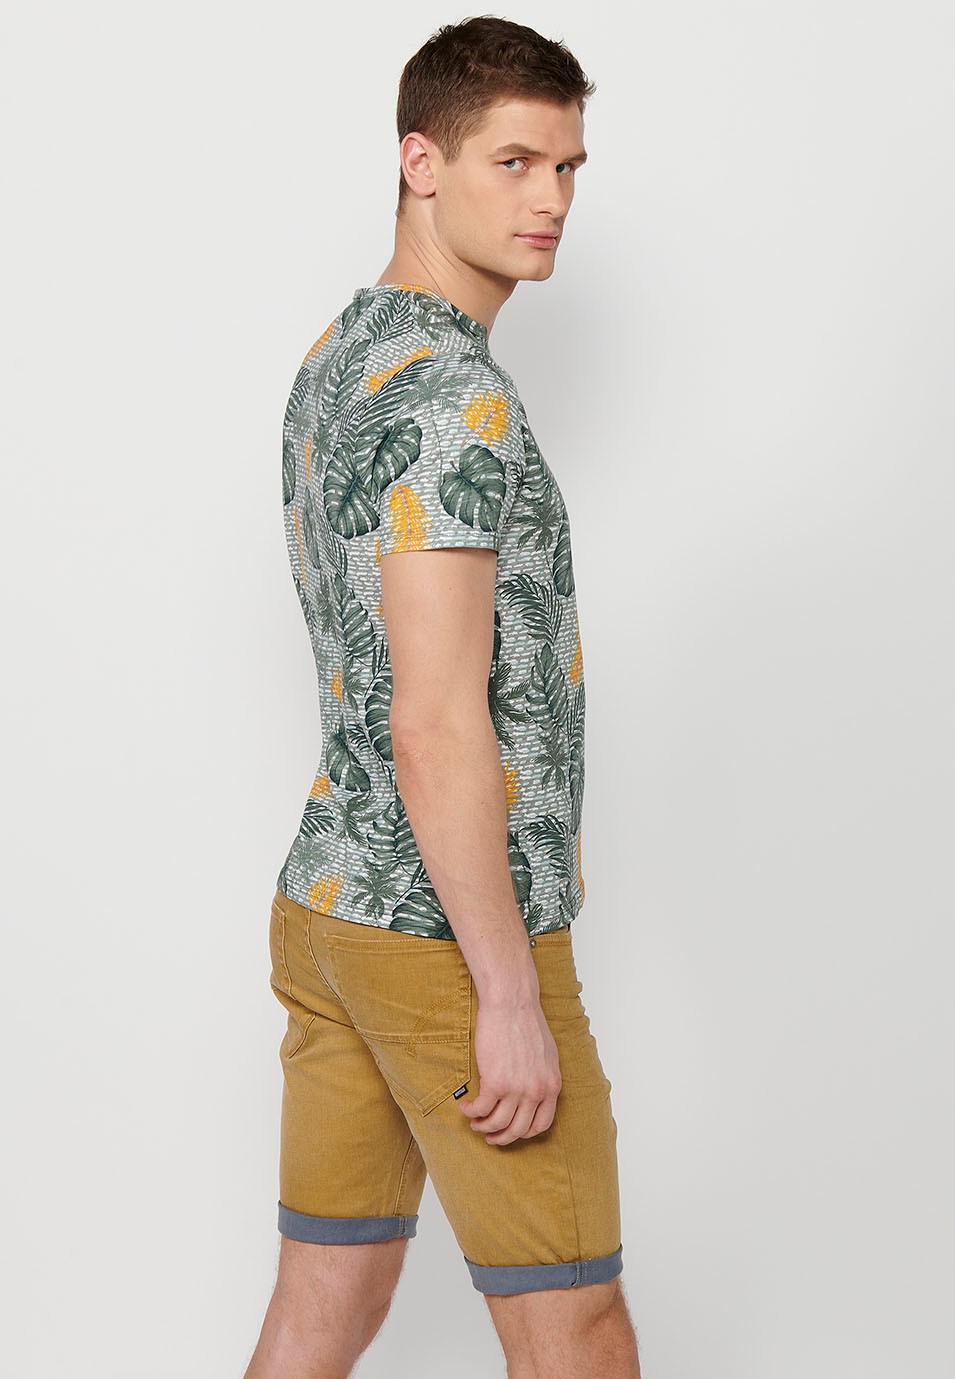 Camiseta manga corta de algodon con estampado tropical multicolor para hombre